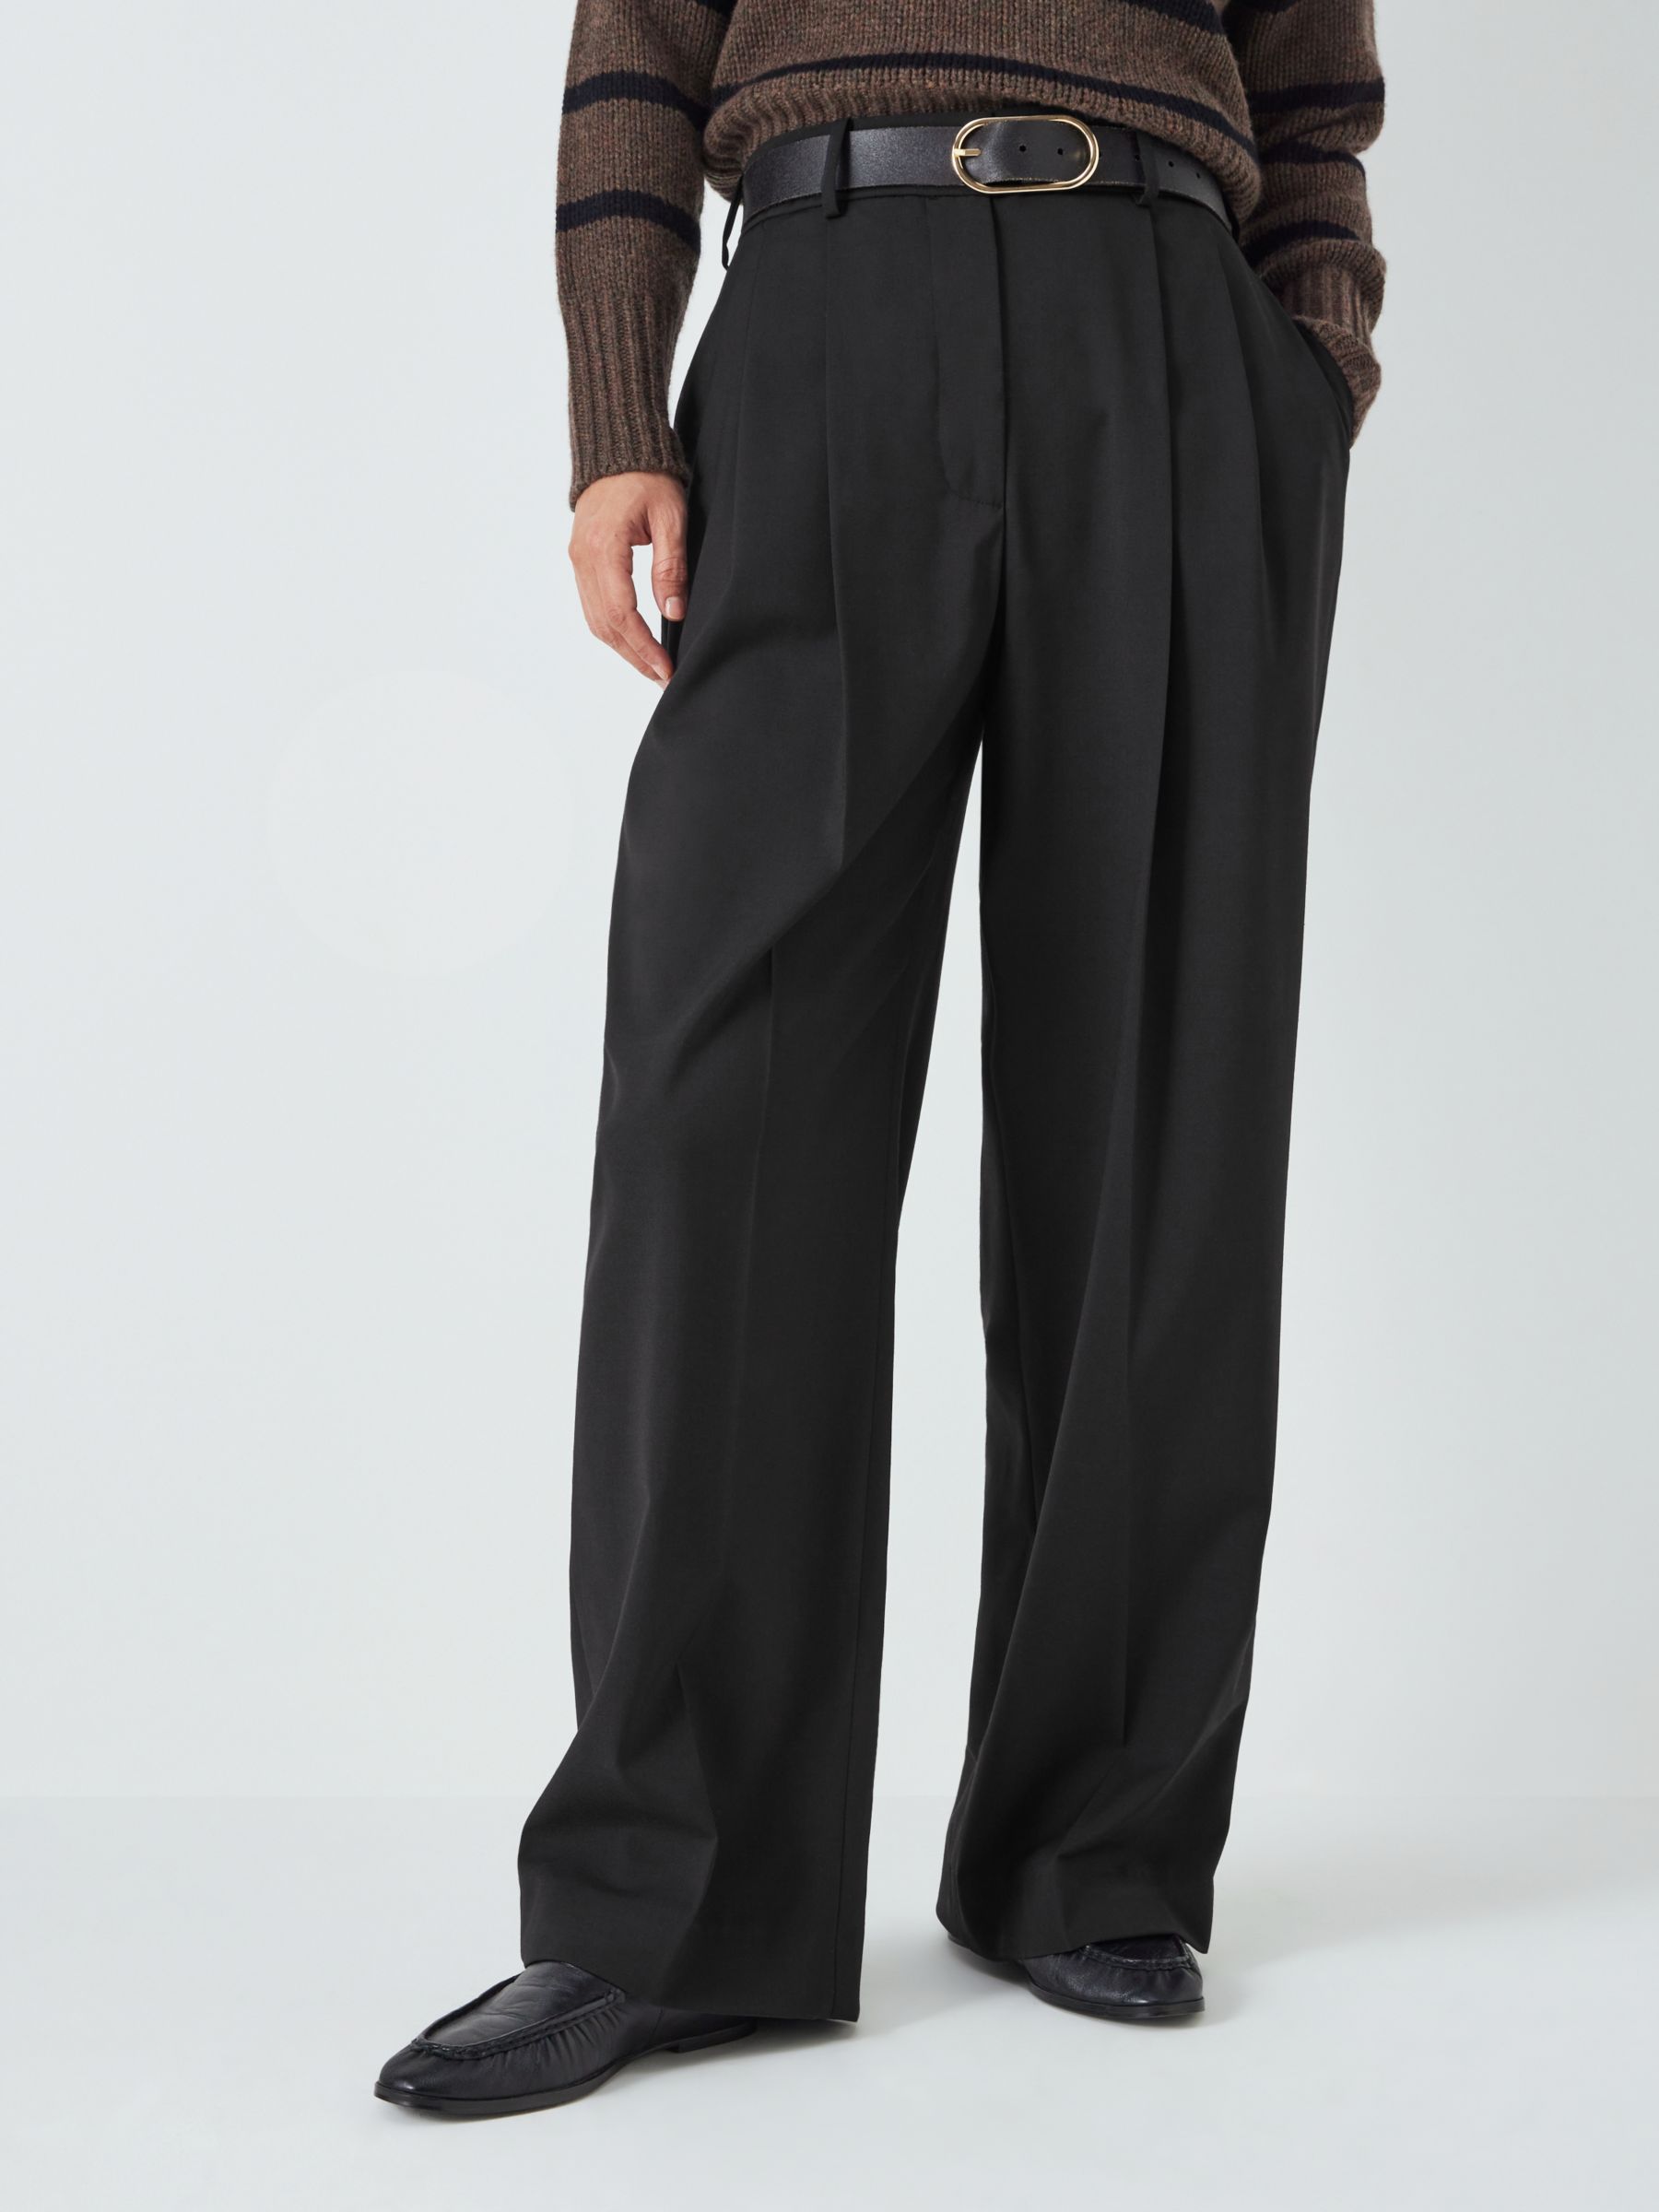 John Lewis однотонные широкие брюки из смесовой шерсти, черные